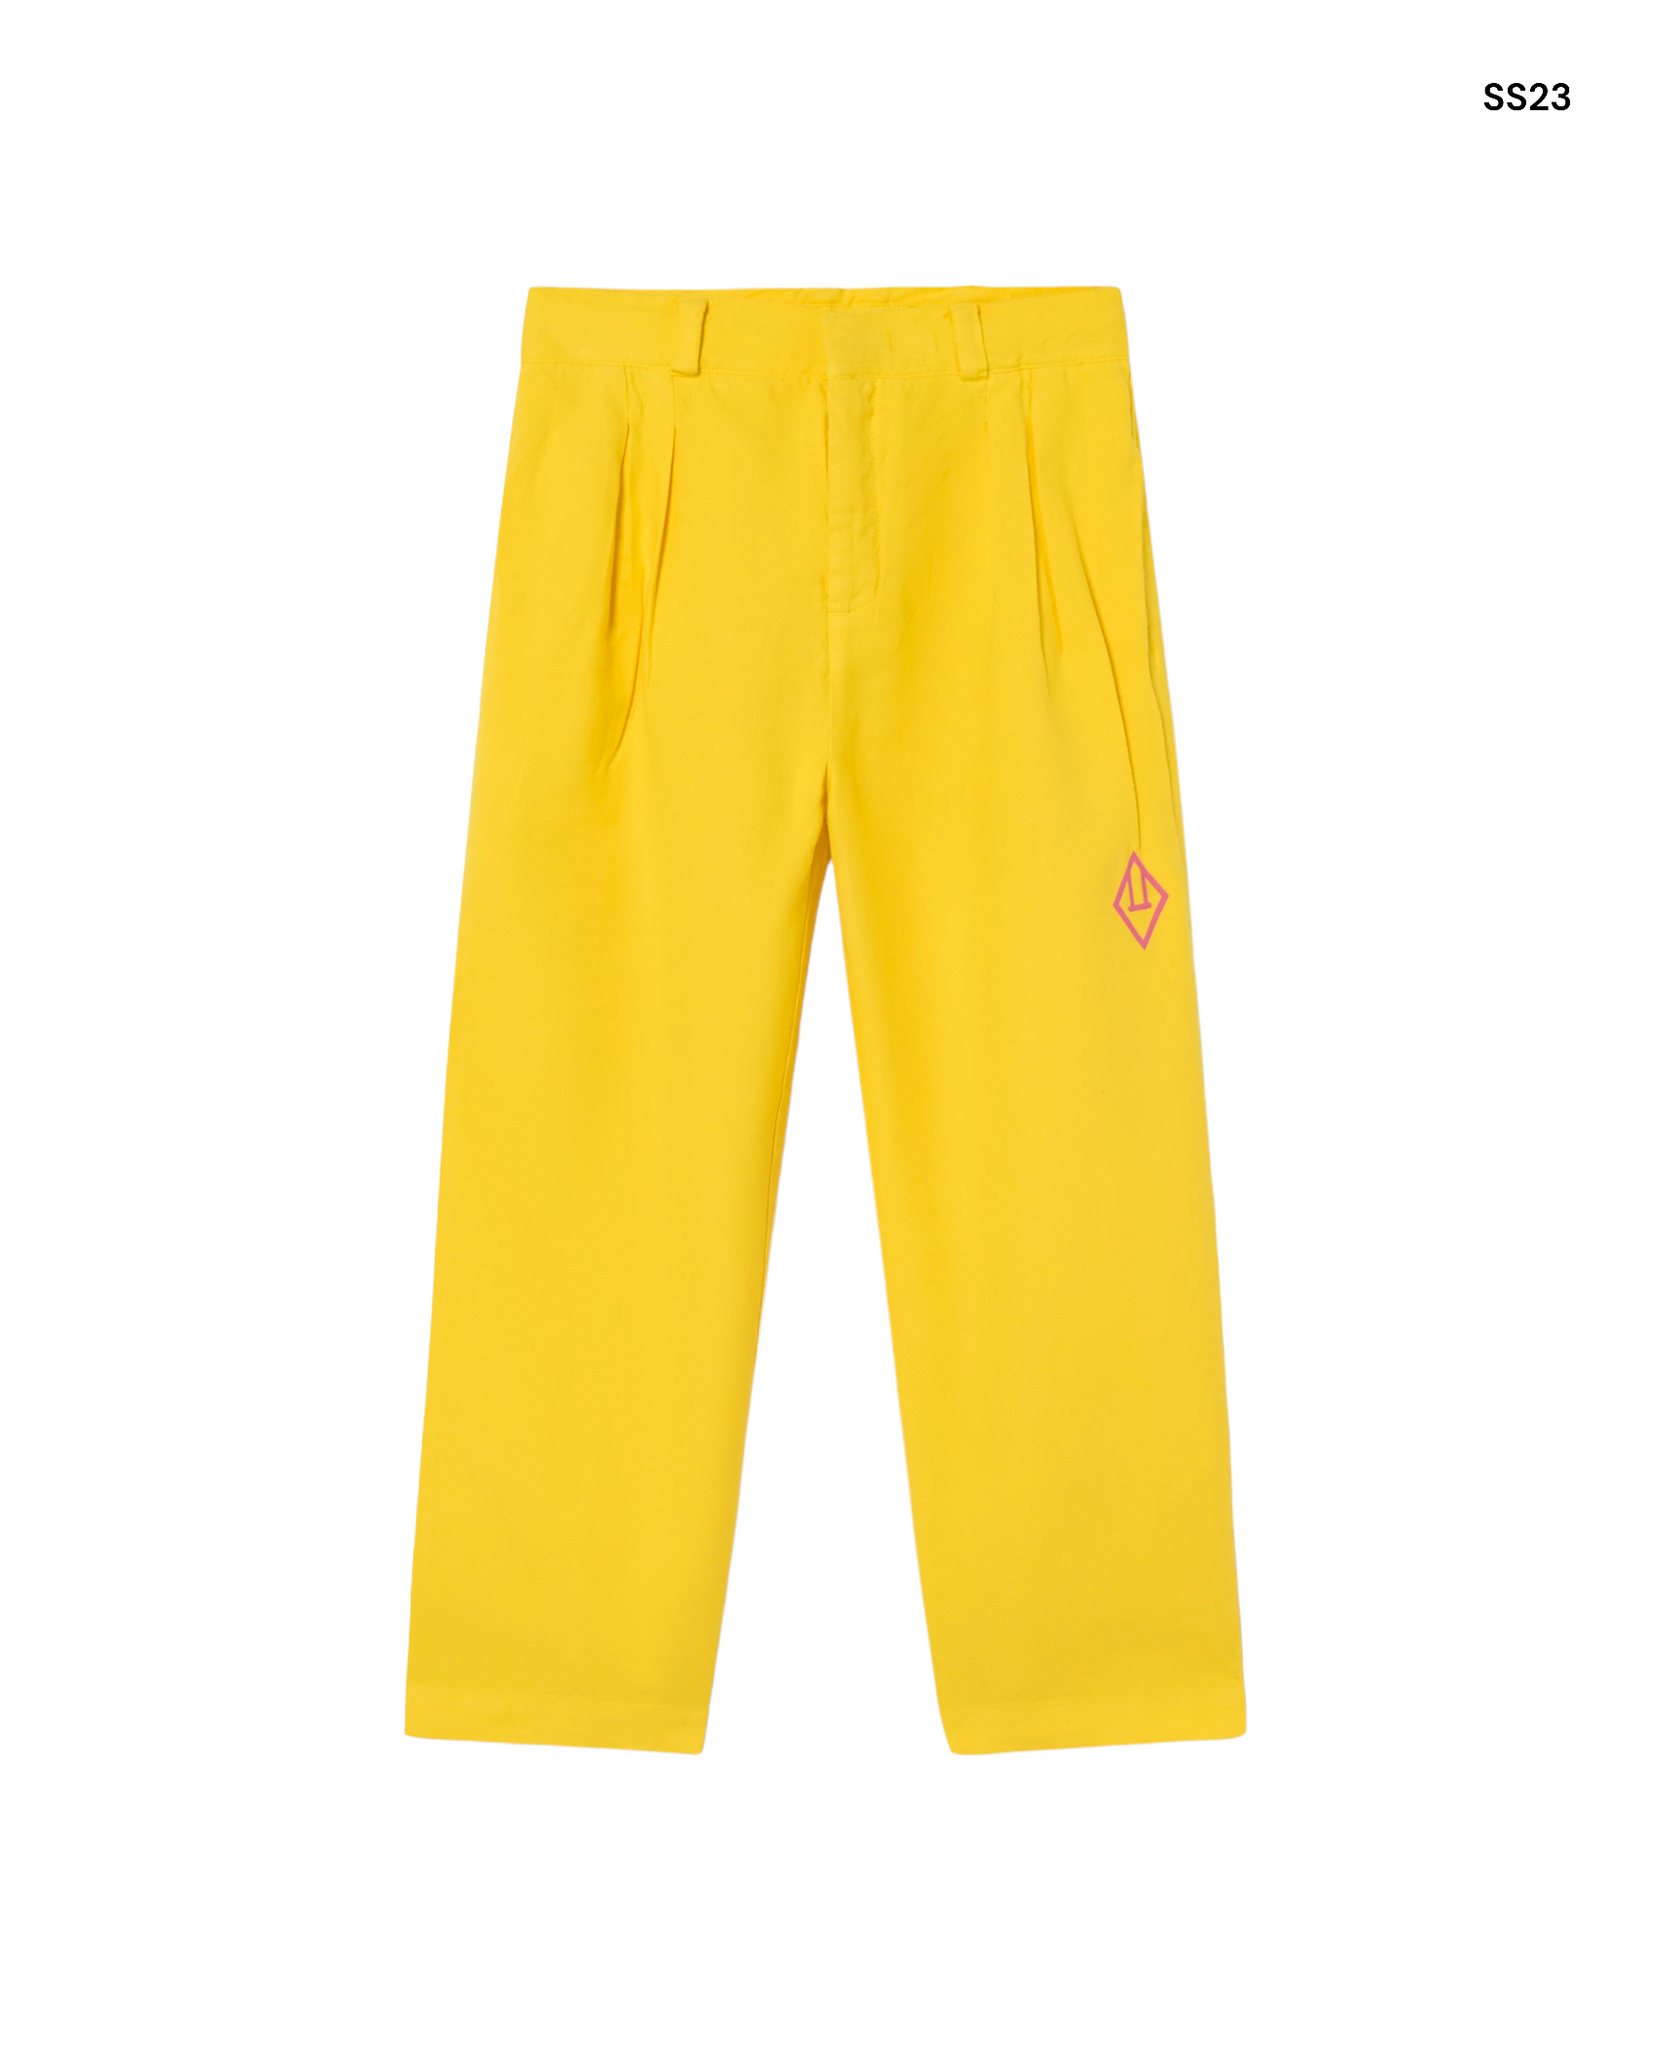 Pantalone giallo per bambini